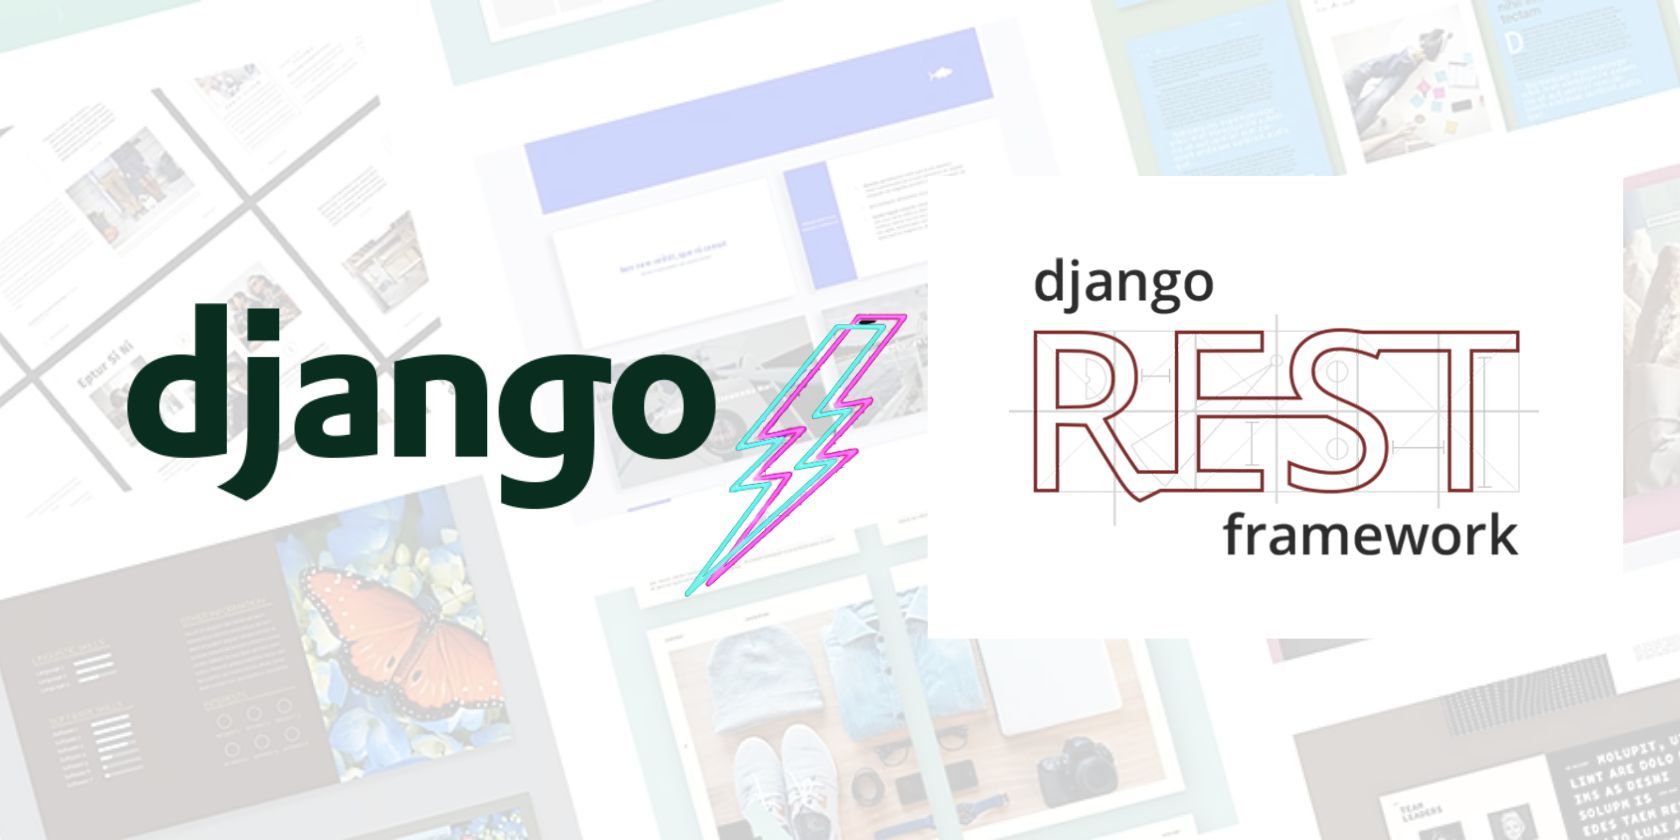 An image with Django and Django REST framework names overlayed